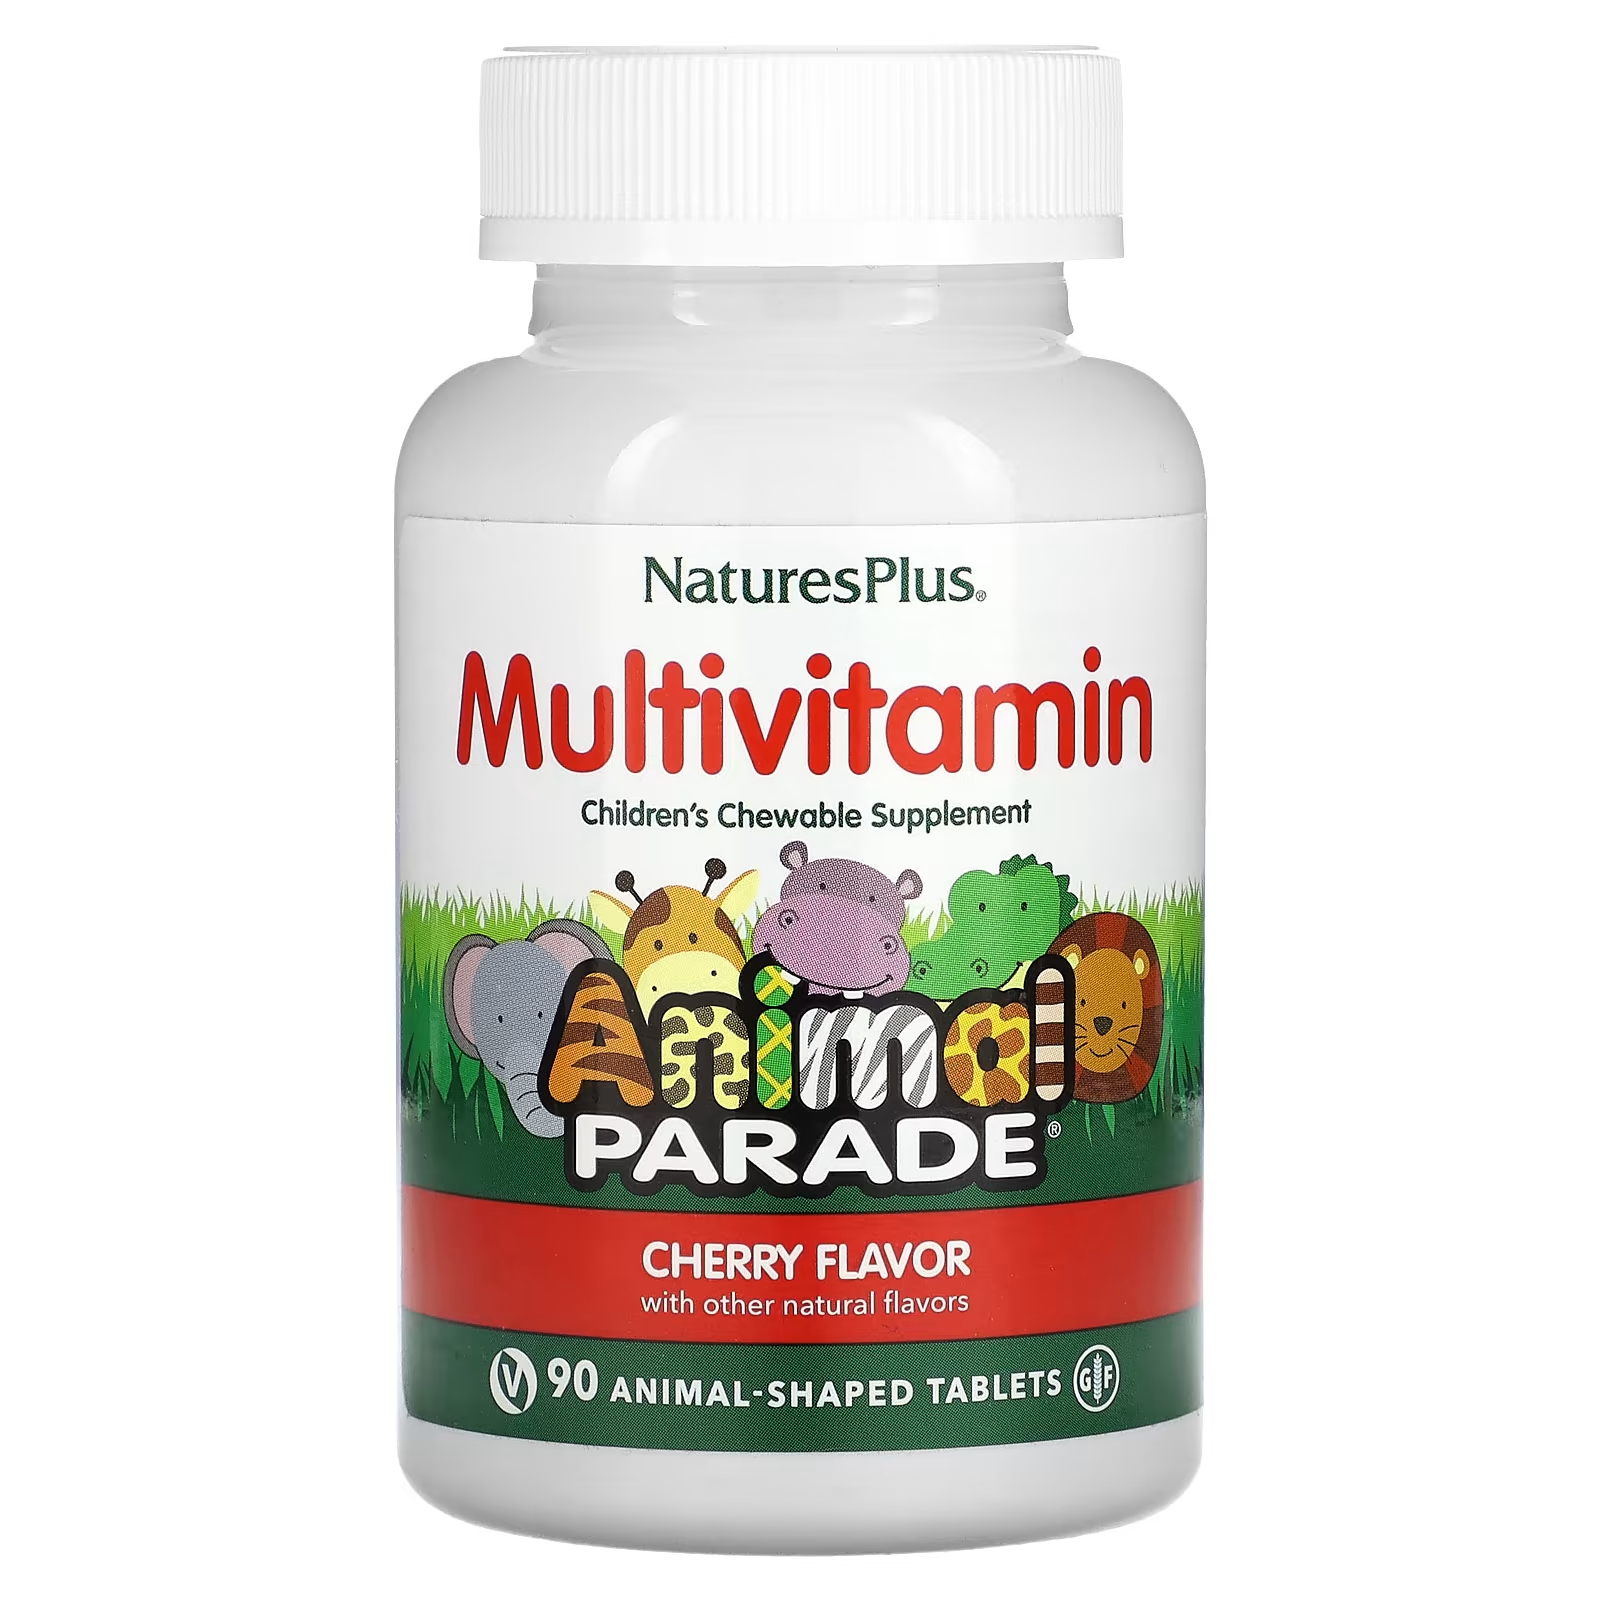 Мультивитаминная добавка NaturesPlus Animal Parade с вишневым вкусом, 90 таблеток в форме животных витамины антиоксиданты минералы awochactive мультивитамины